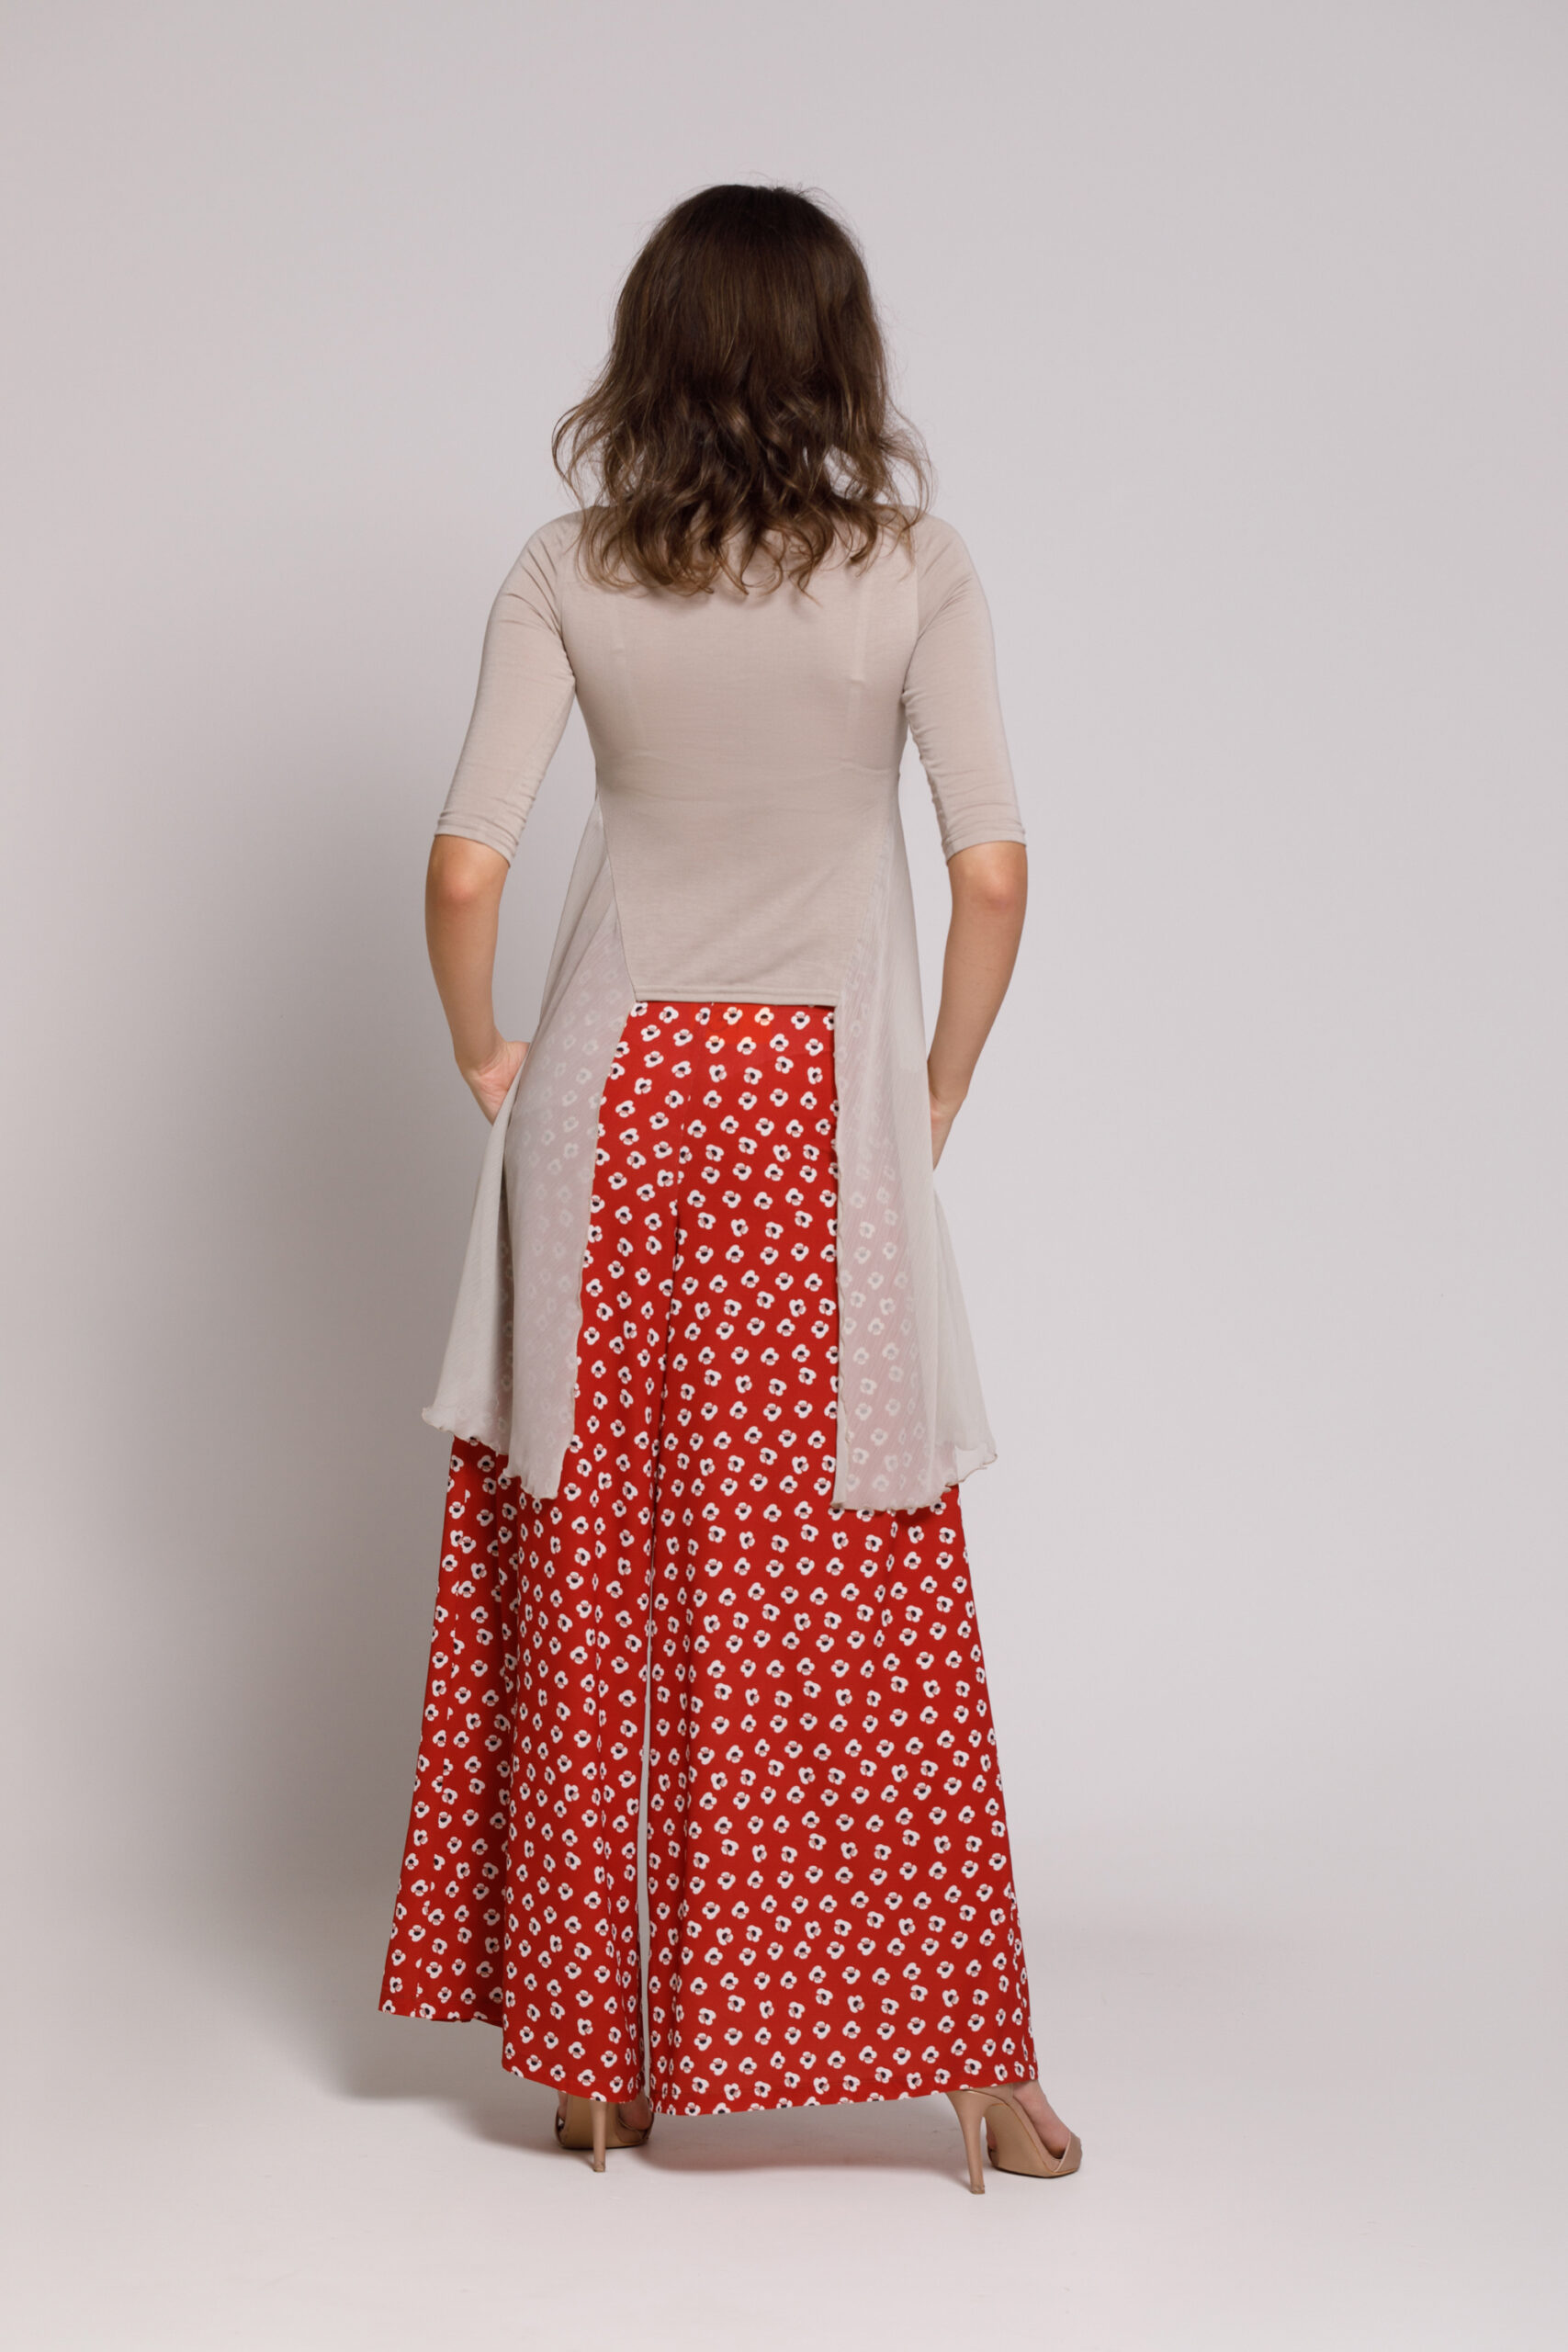 Pantalon USTIN casual din viscoza cu imprimeu floral caramiziu. Materiale naturale, design unicat, cu broderie si aplicatii handmade